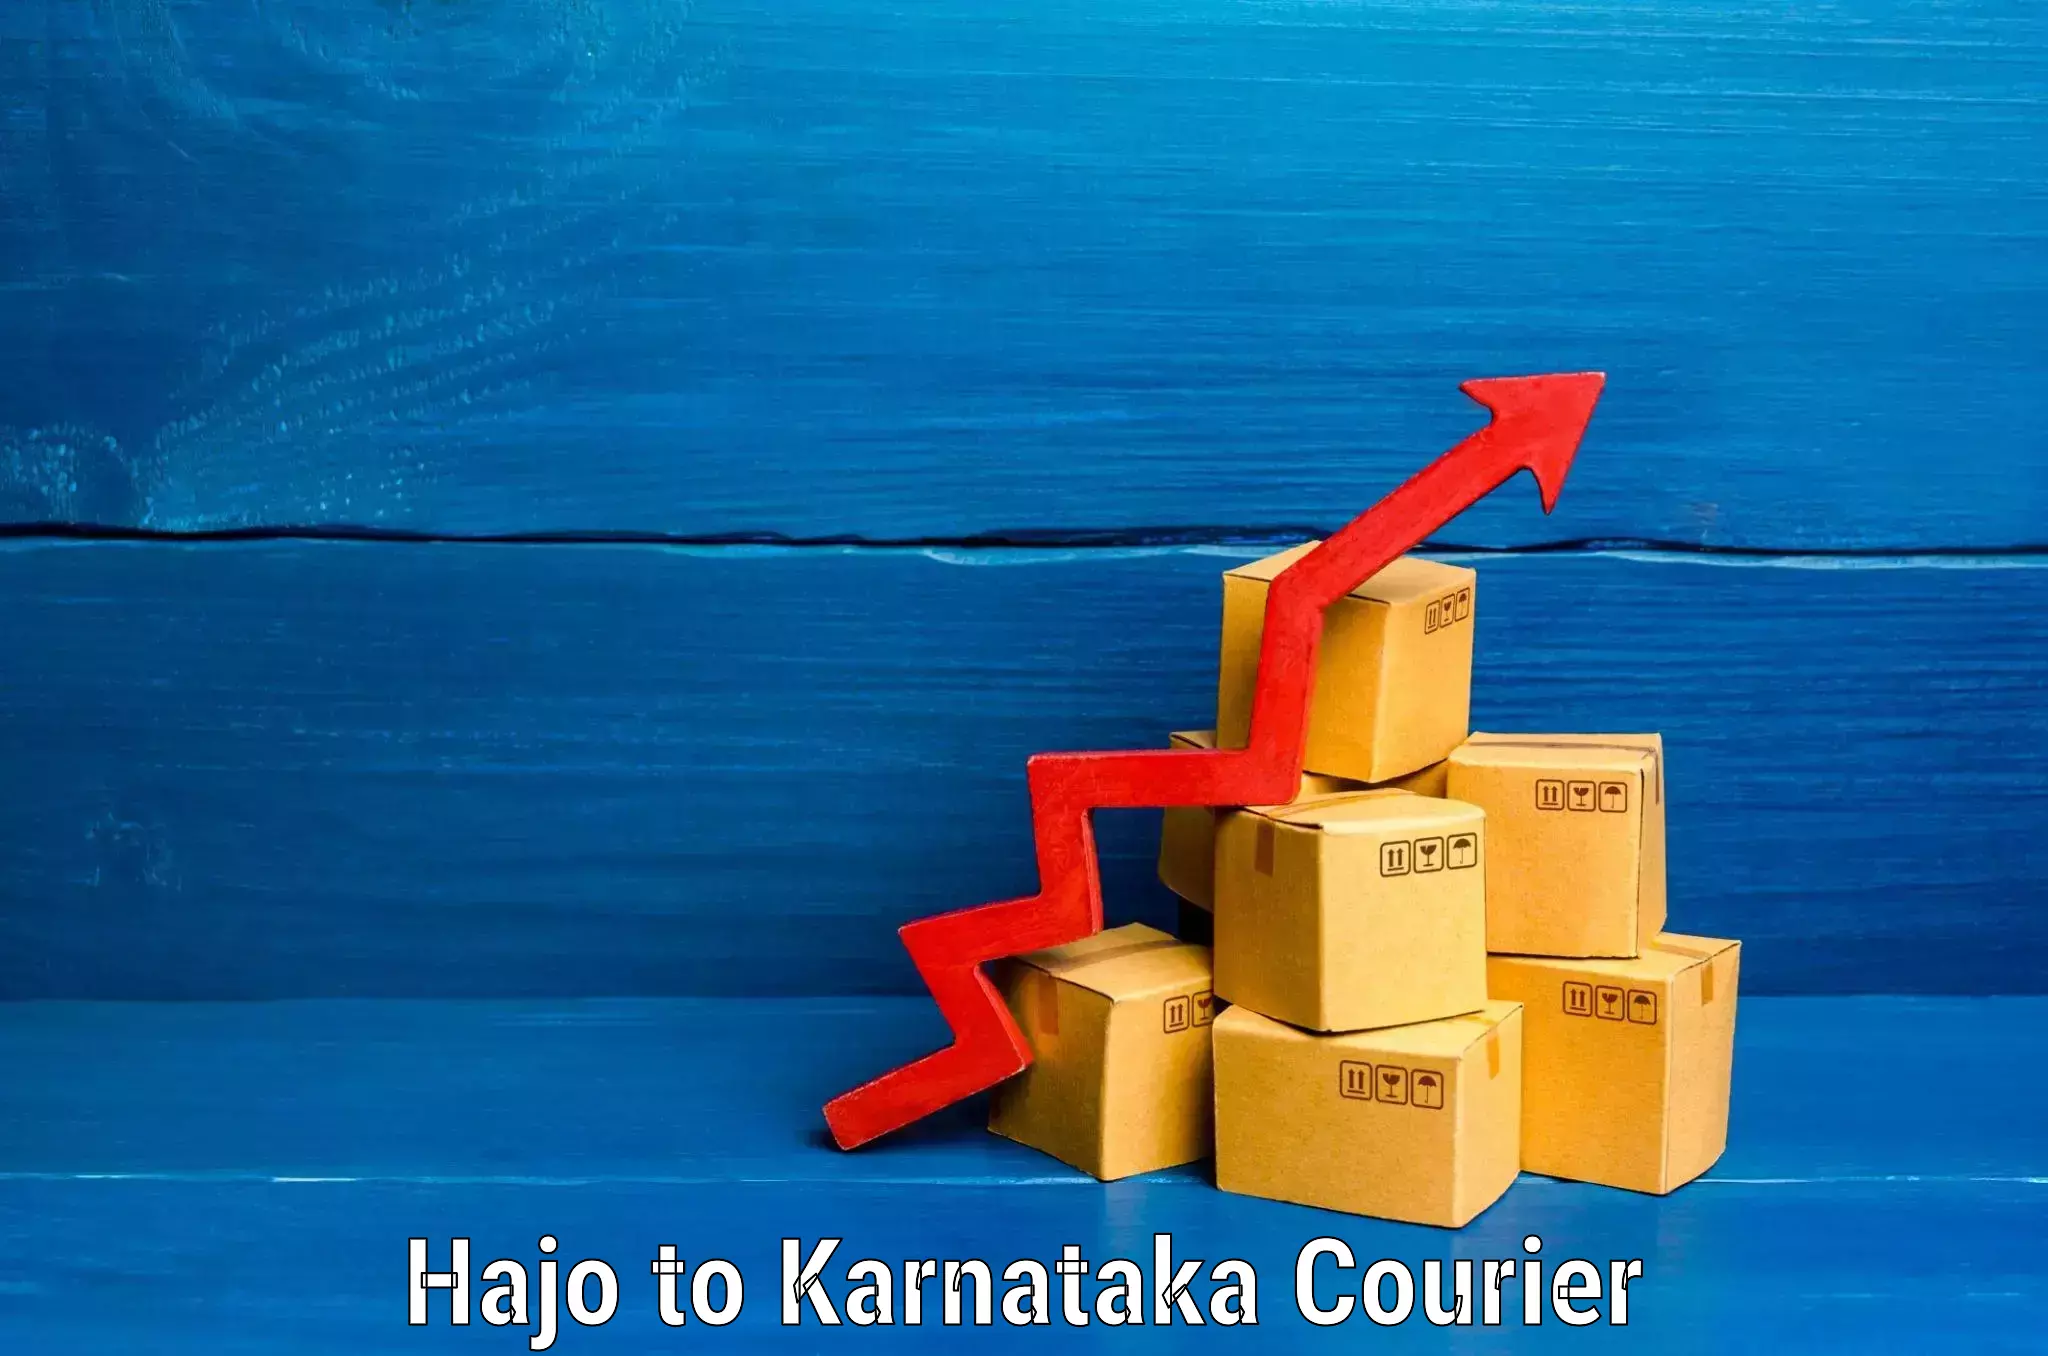 Luggage transit service Hajo to Karnataka